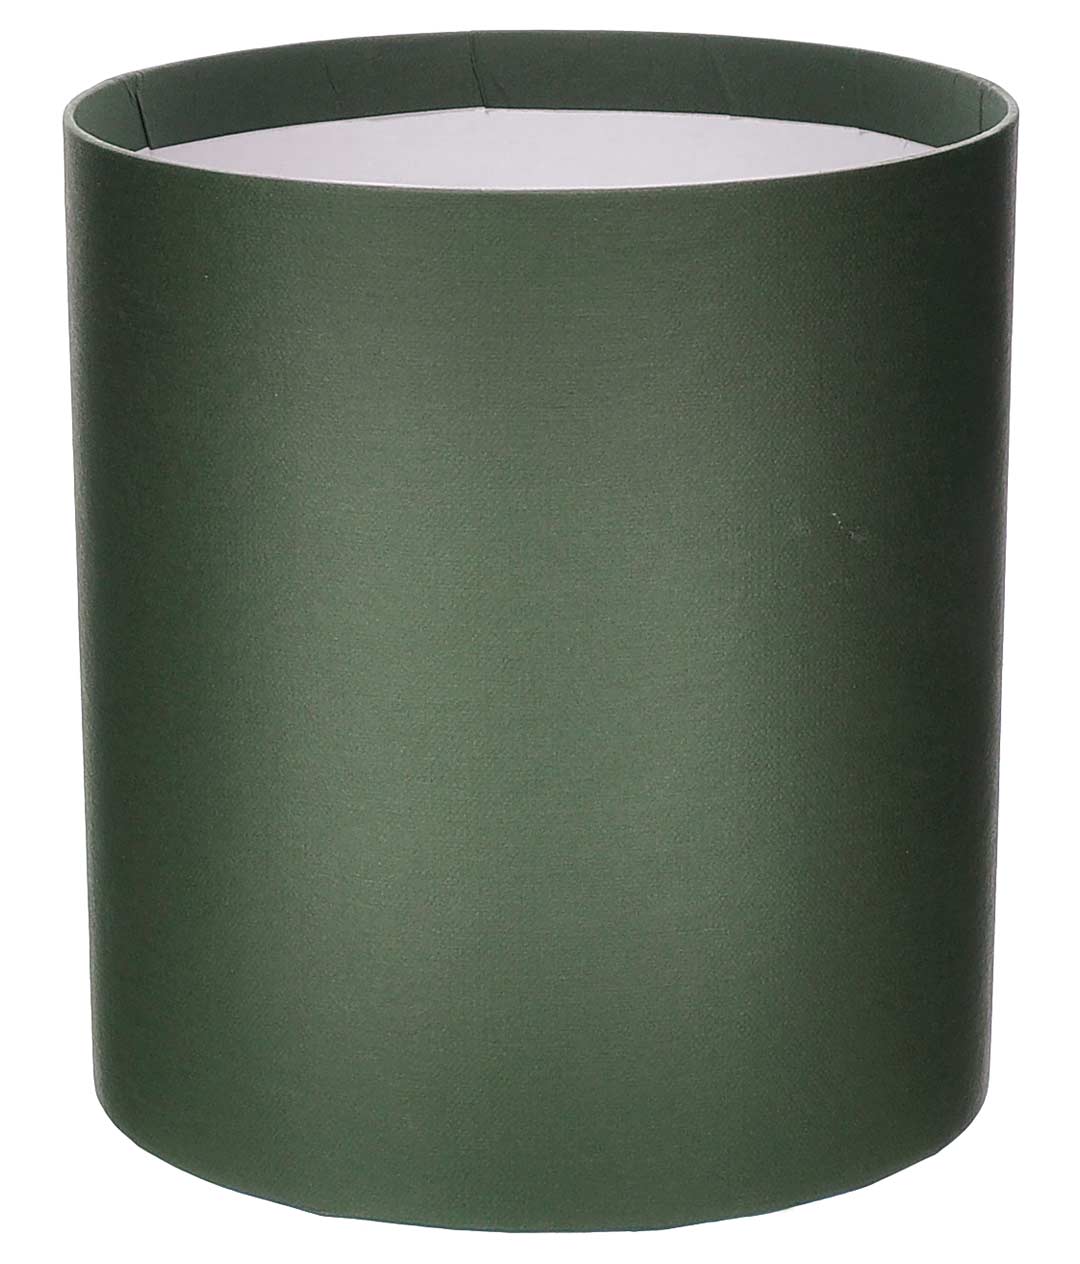 Изображение Коробка круглая для цветов темно-зеленый из бумаги 180/200 без крышки